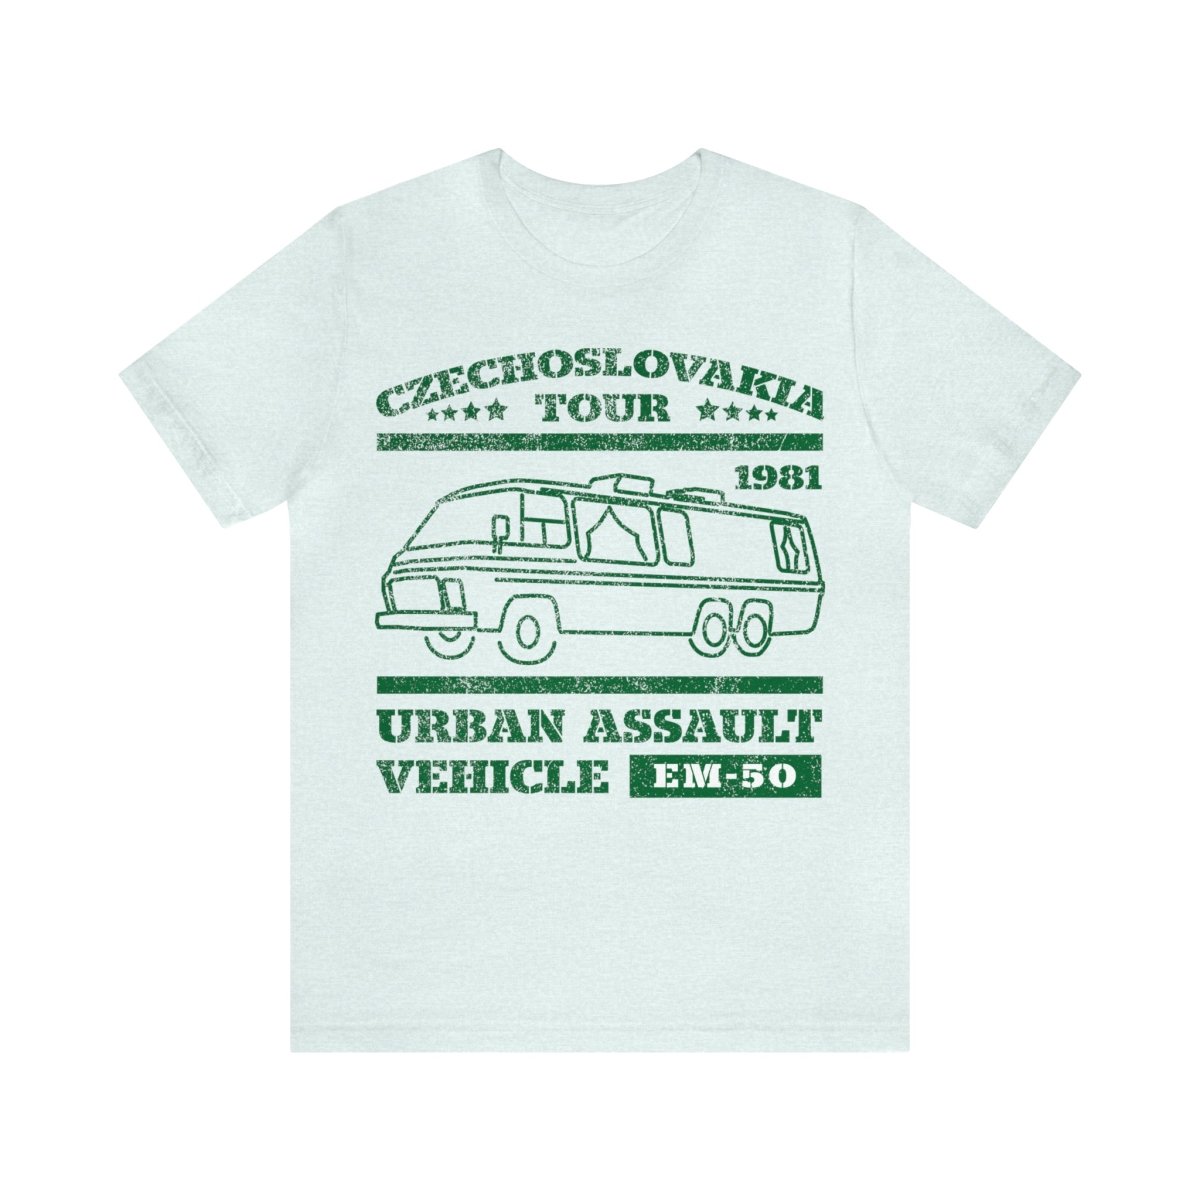 EM-50 Premium T-Shirt, Urban Assault Vehicle, Razzle Dazzle, Funny